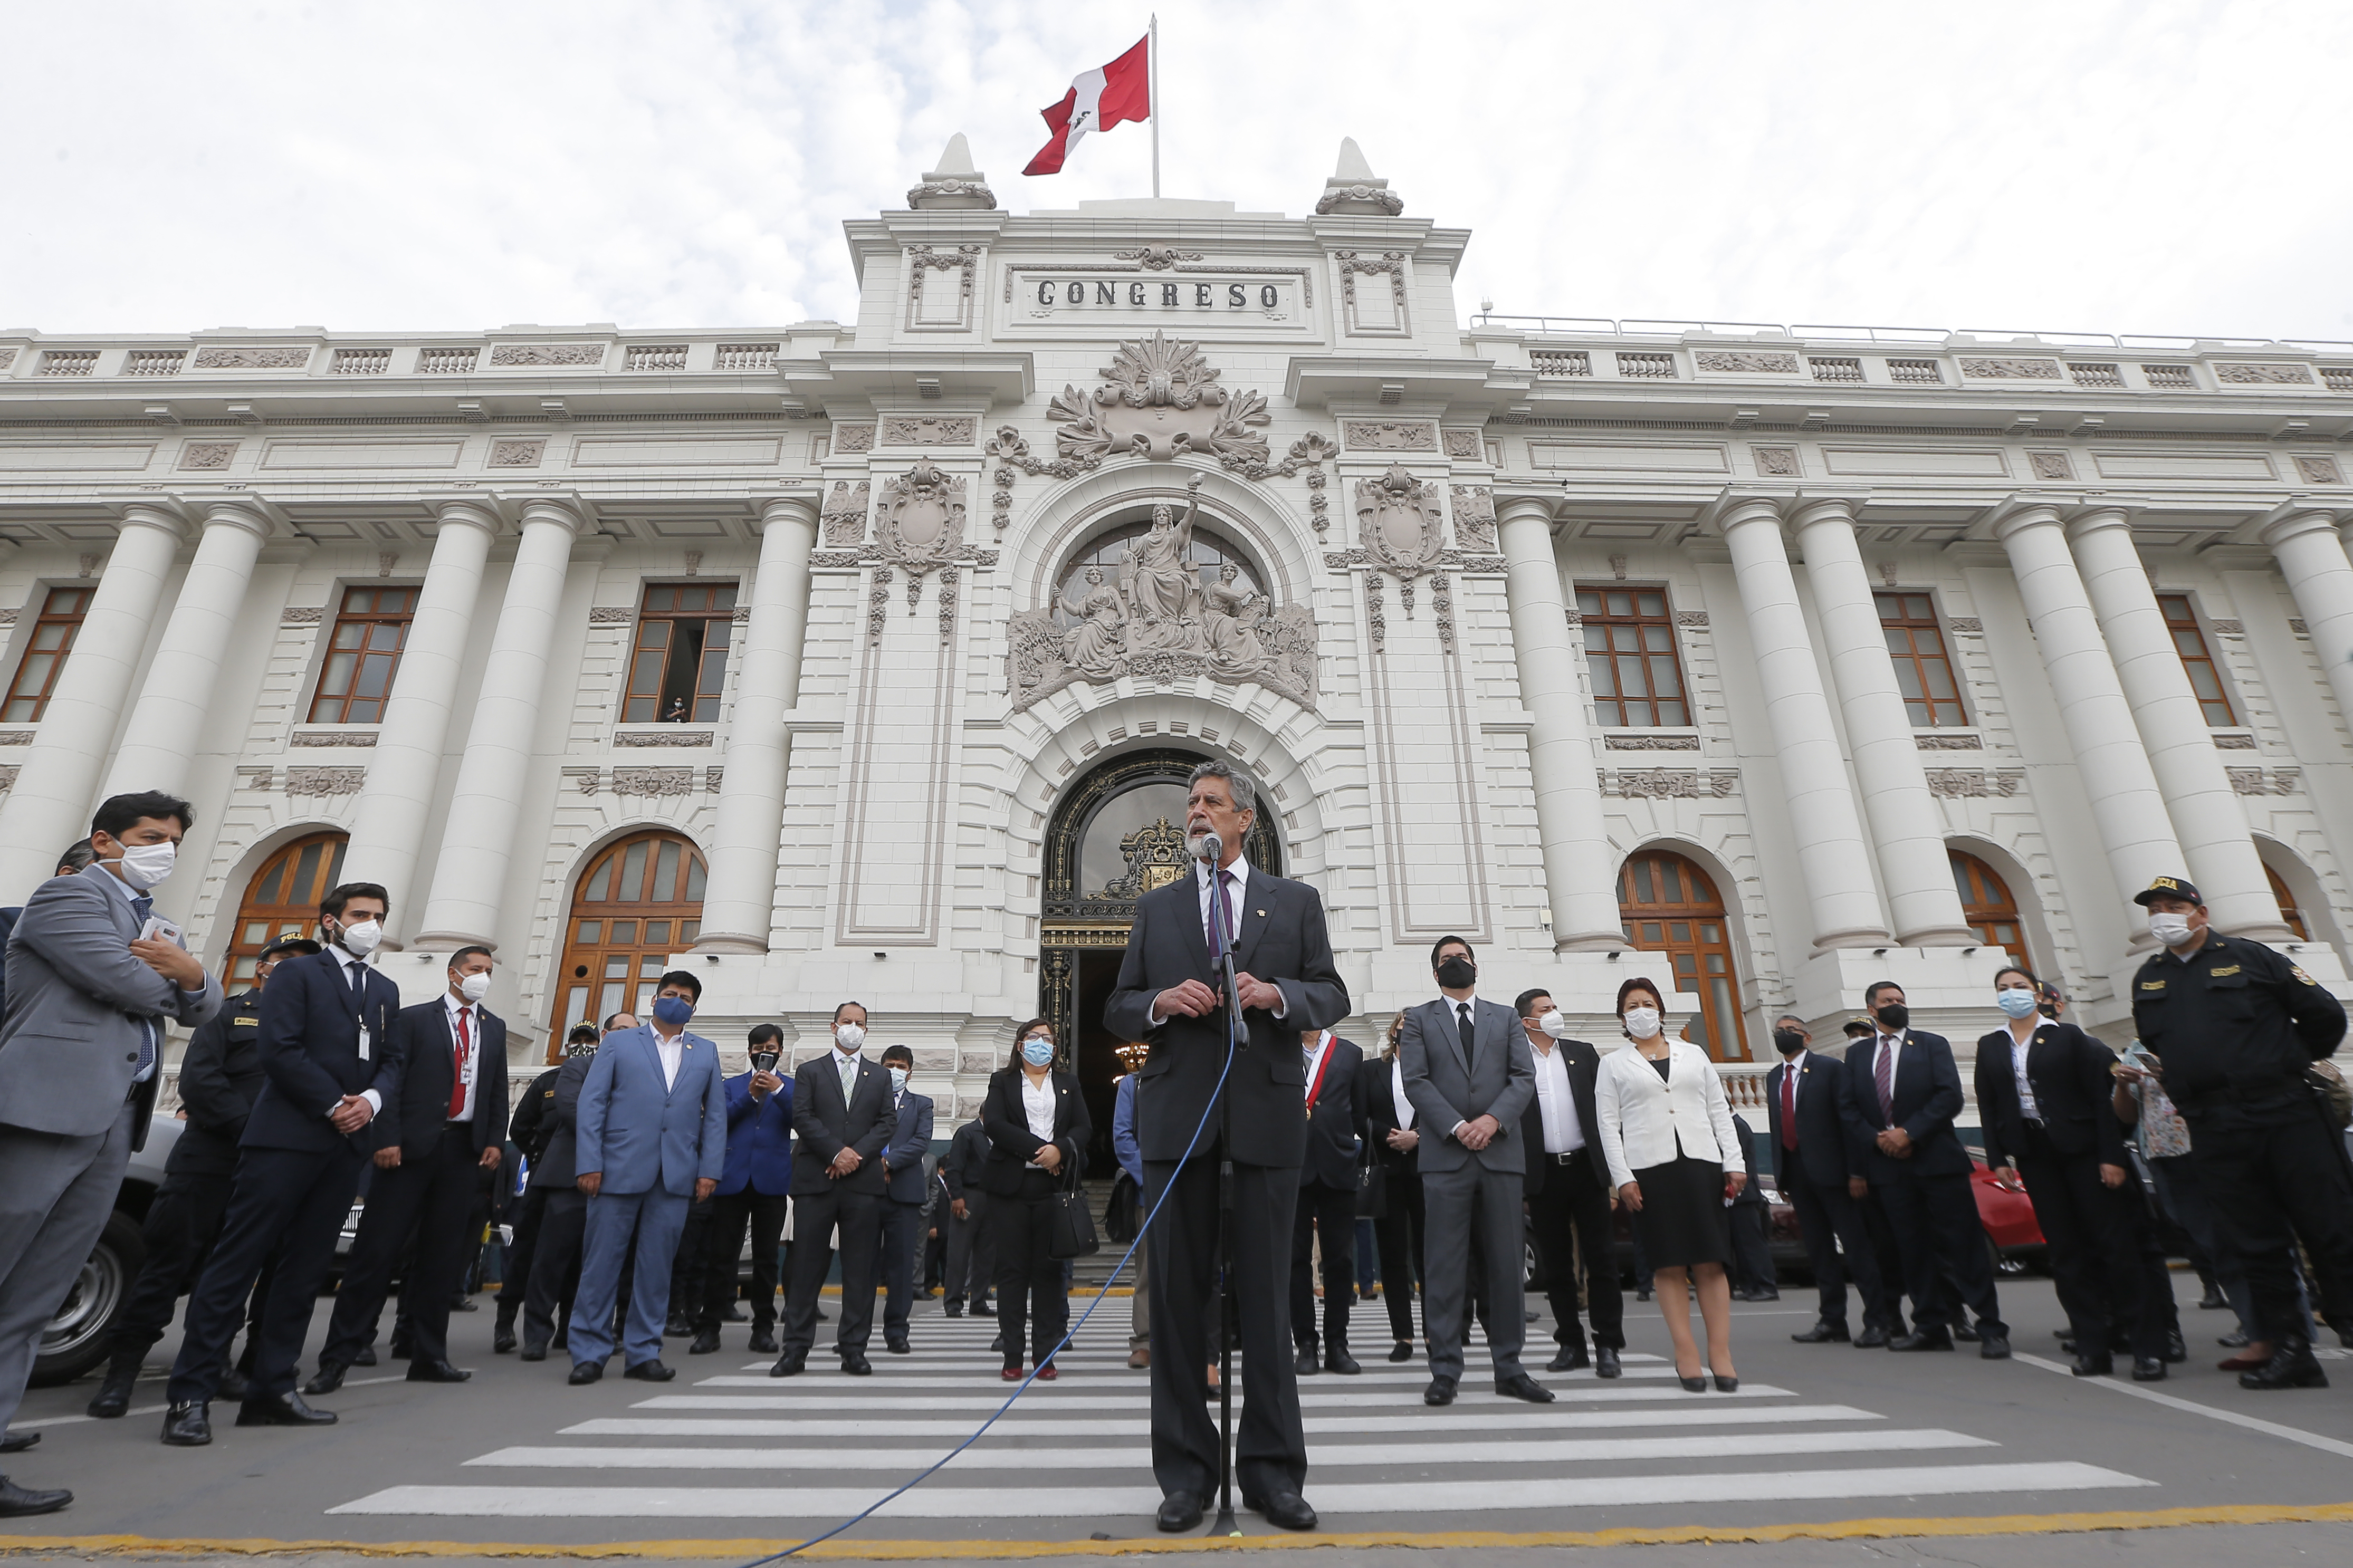 Presidente peruano Francisco Sagasti reitera apoyo a Guaidó y a la lucha por la libertad y democracia en Venezuela